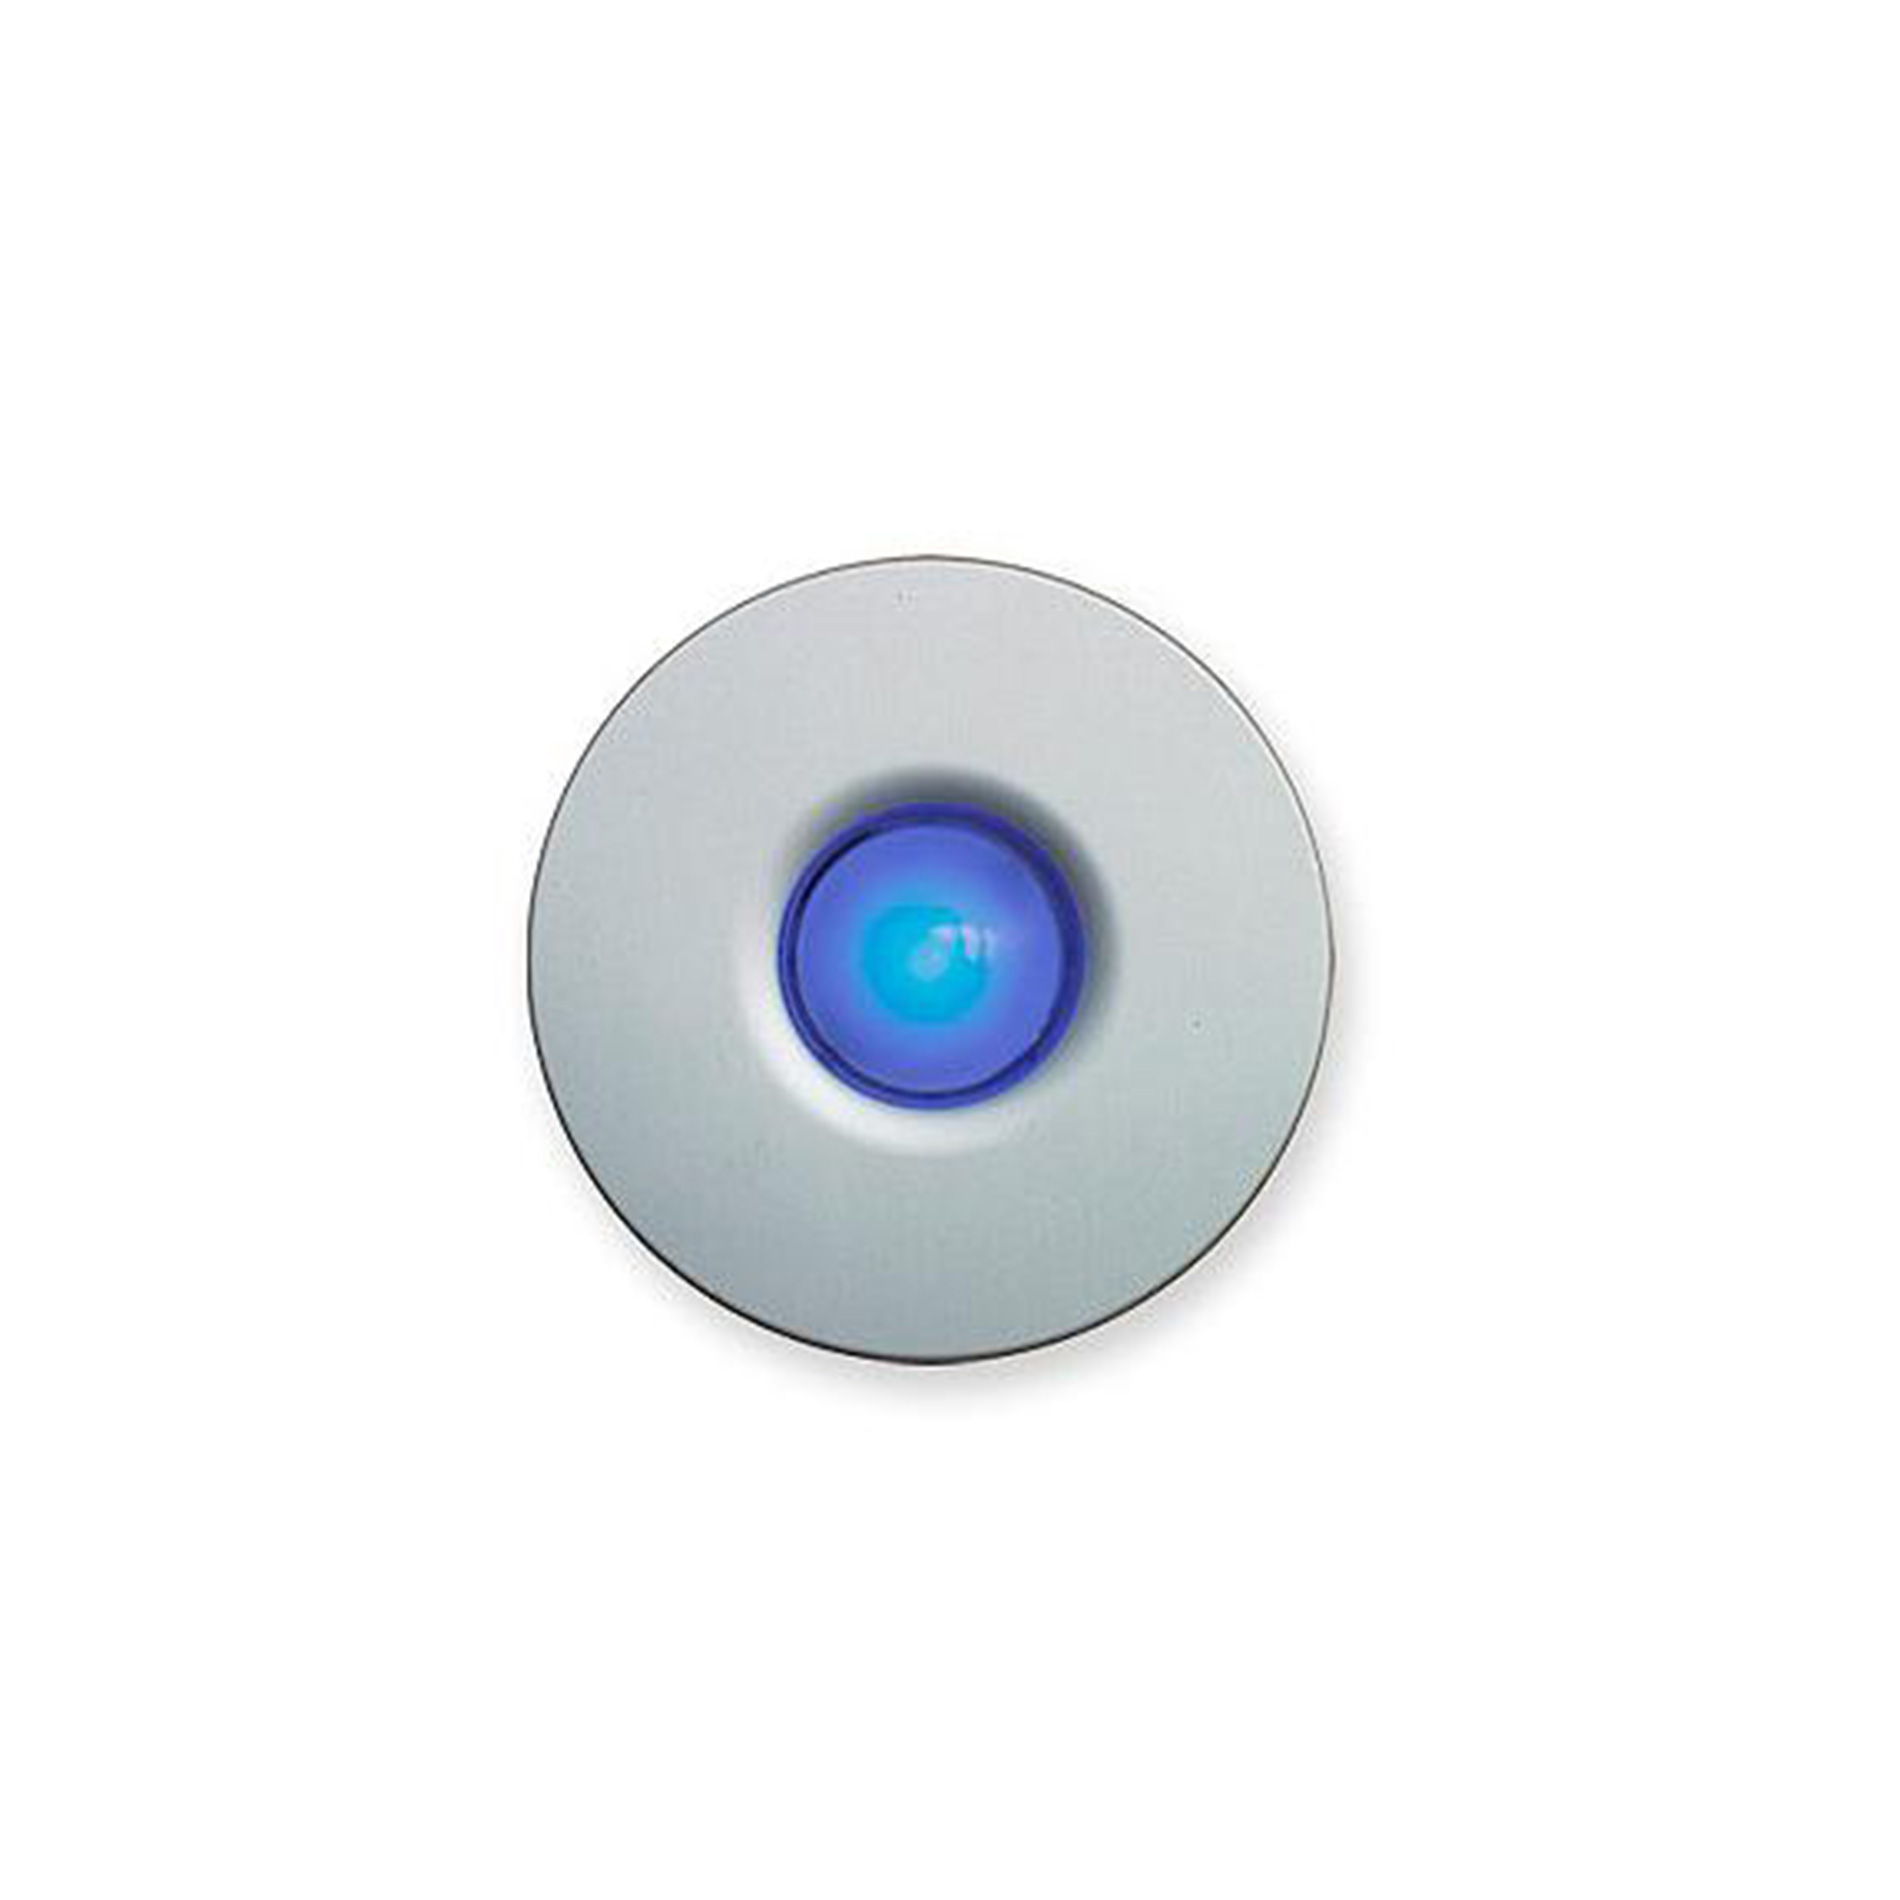 De-light Doorbell Button by Spore